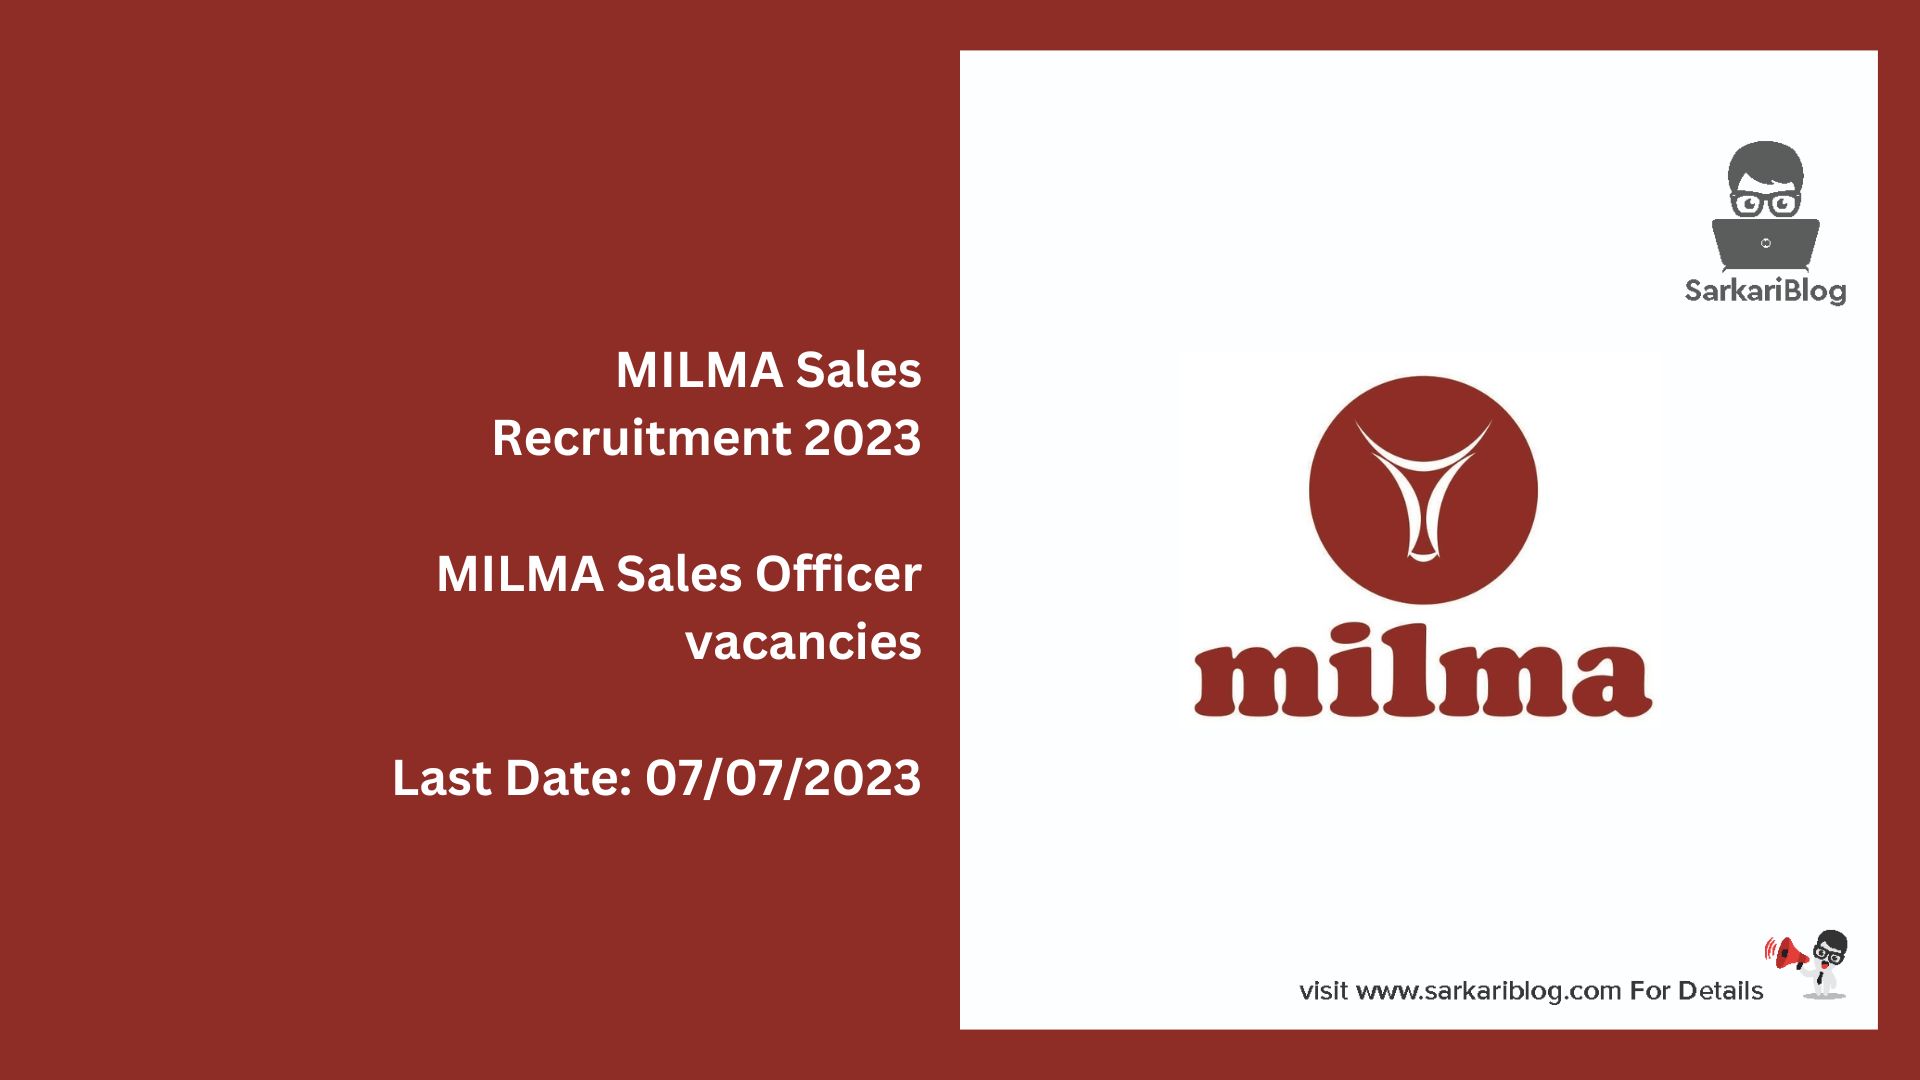 MILMA Sales Recruitment 2023